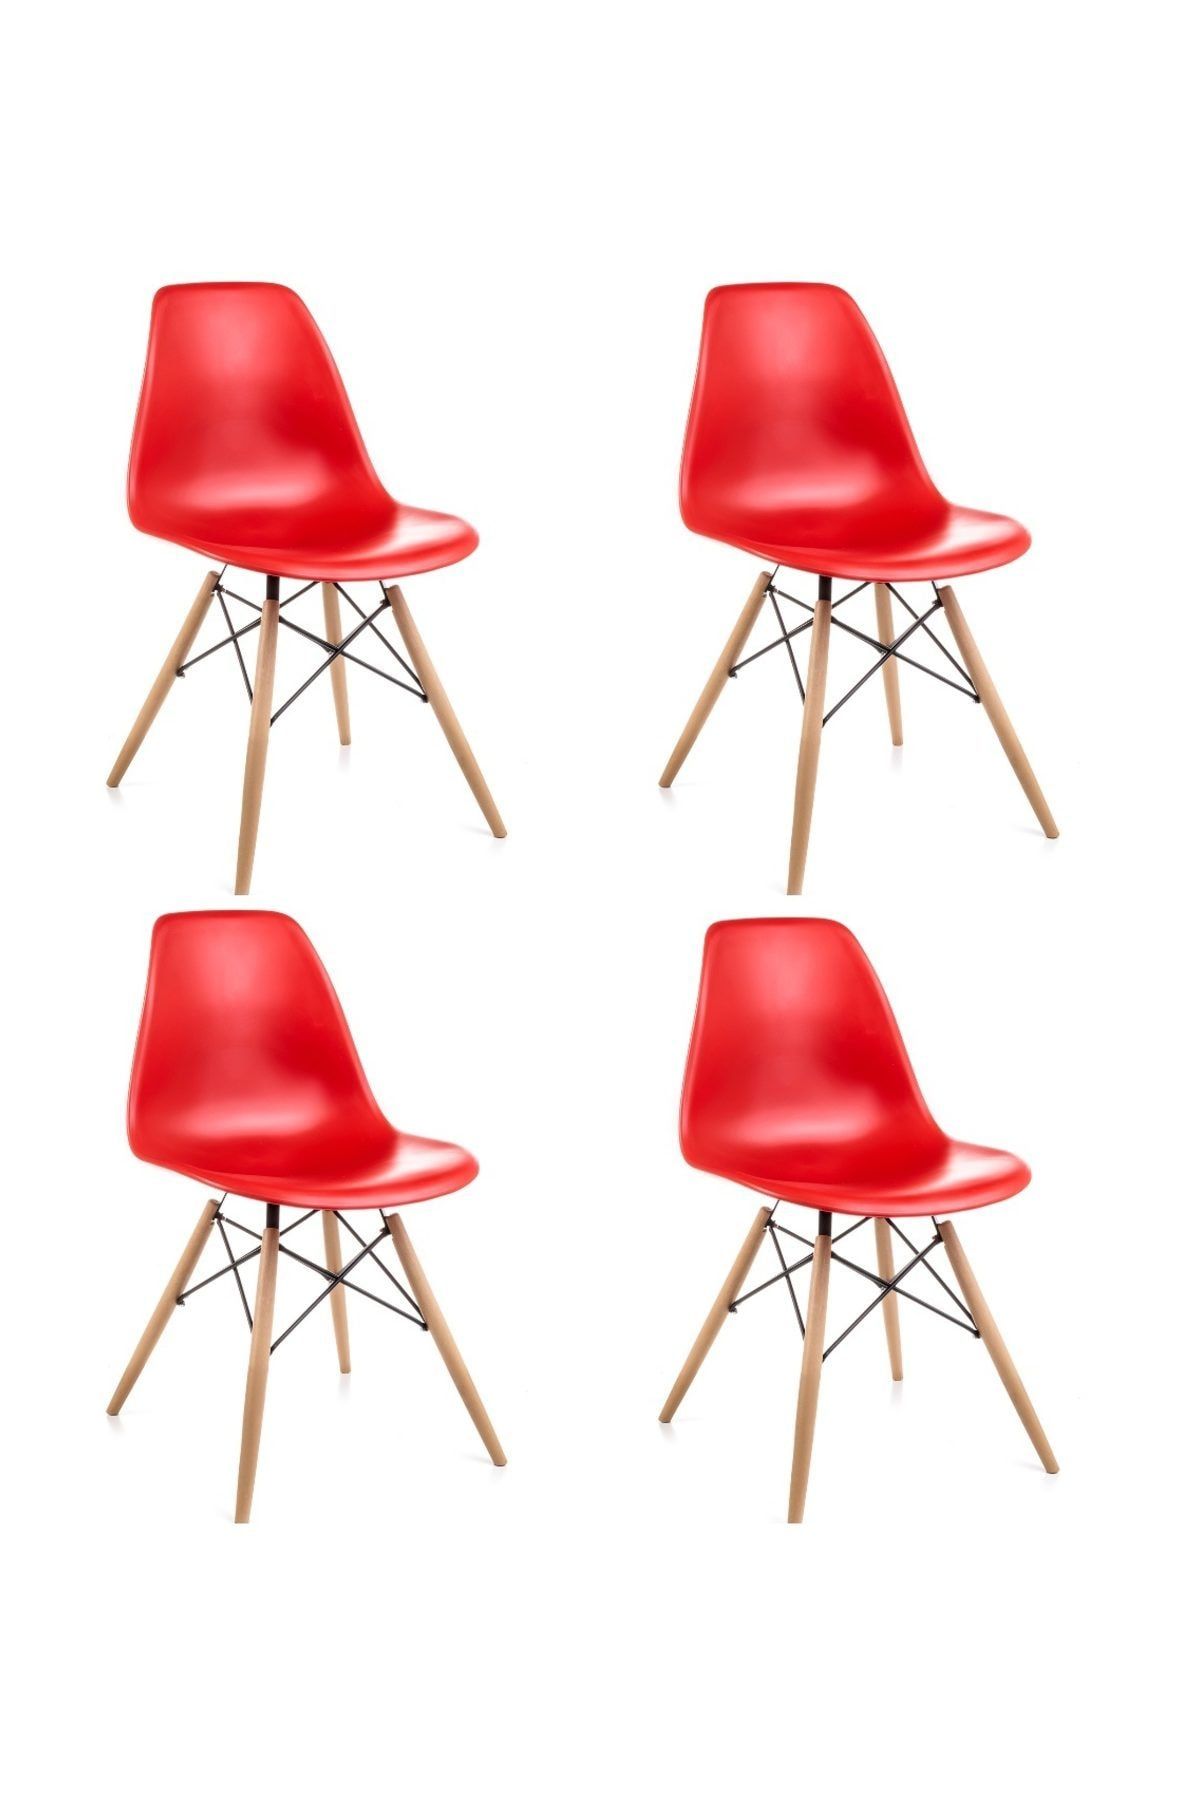 Dorcia Home Kırmızı Eames Sandalye - 4 Adet - Cafe Balkon Mutfak Sandalyesi